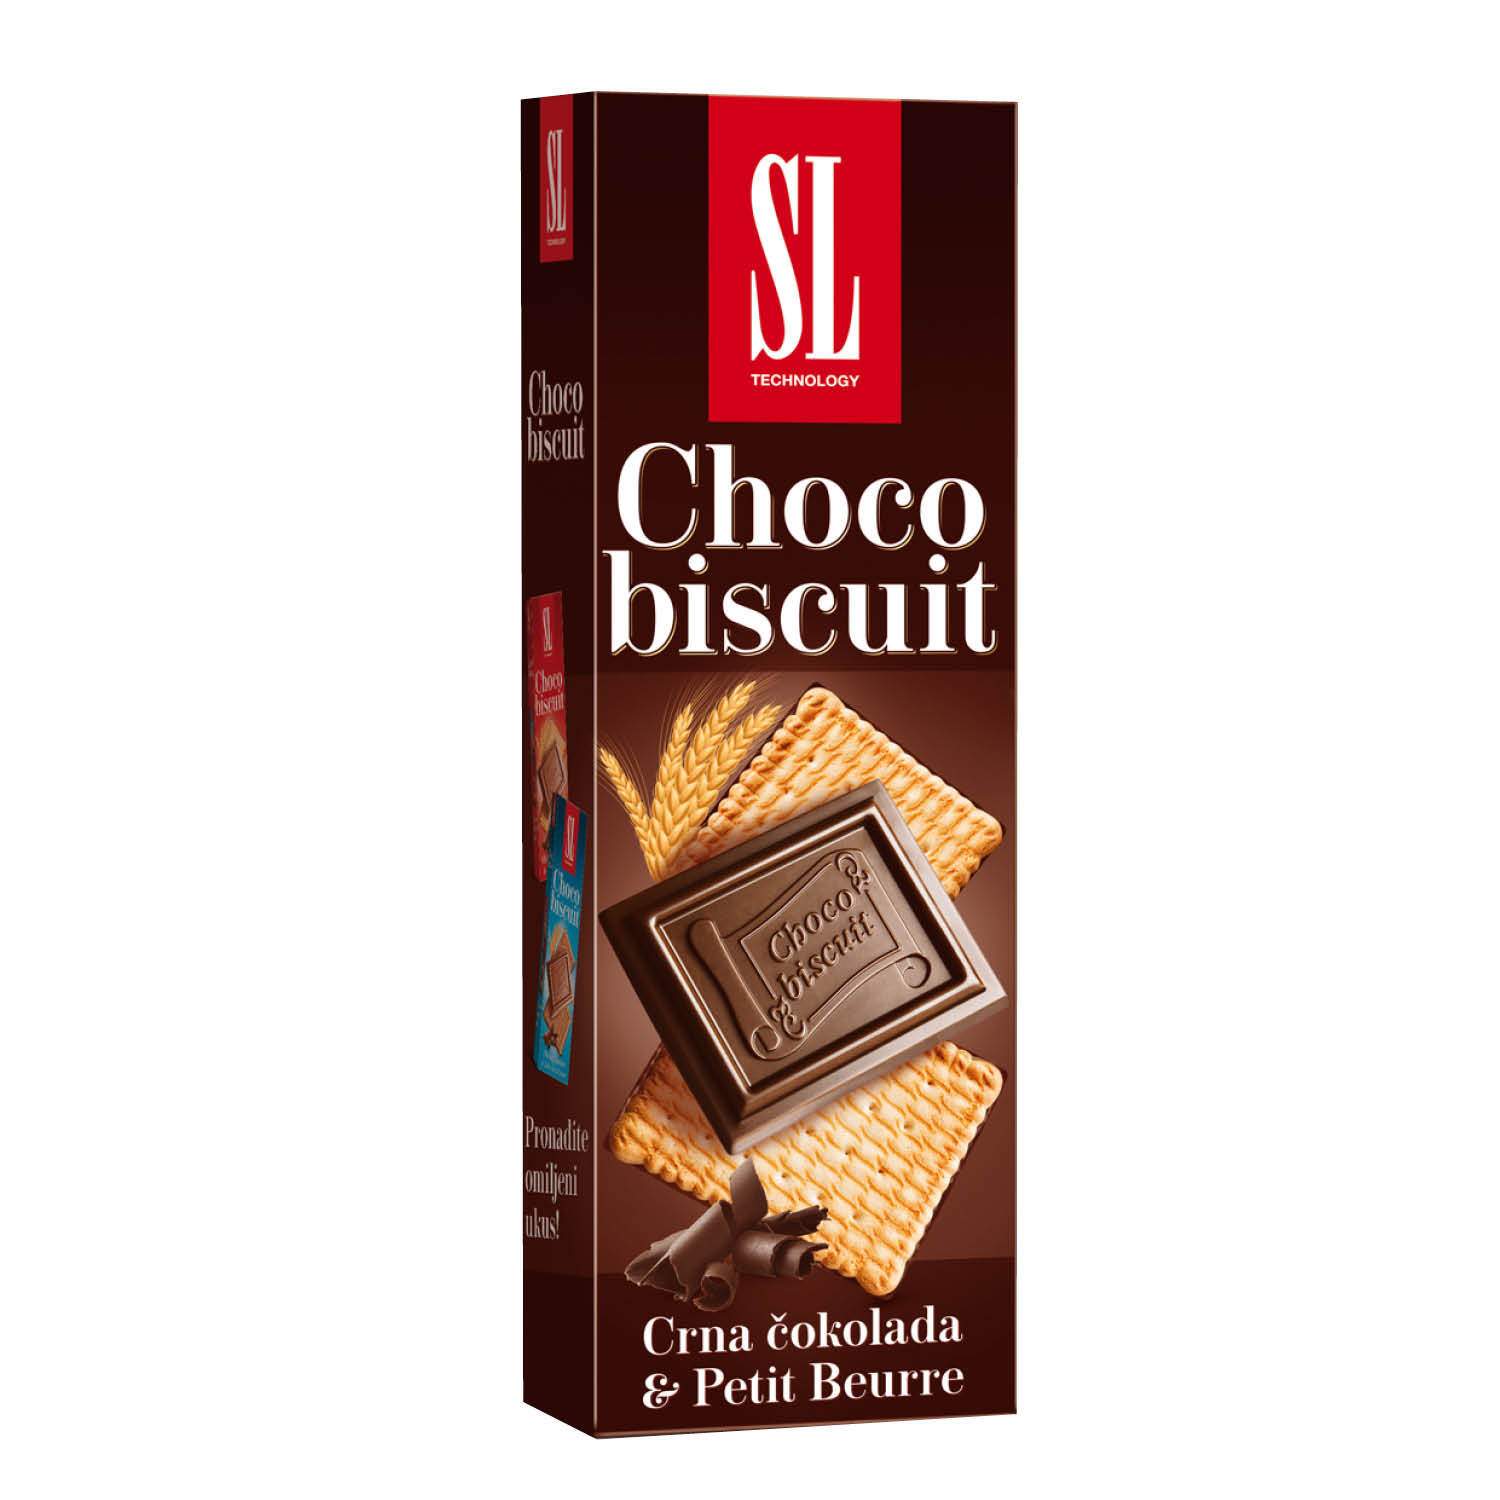 Чоко шоколадку. Шоколад черный принц. Шоколад Choco Biscuit, 300 г. Черный принц шоколадка. Конфеты с черным шоколадом.